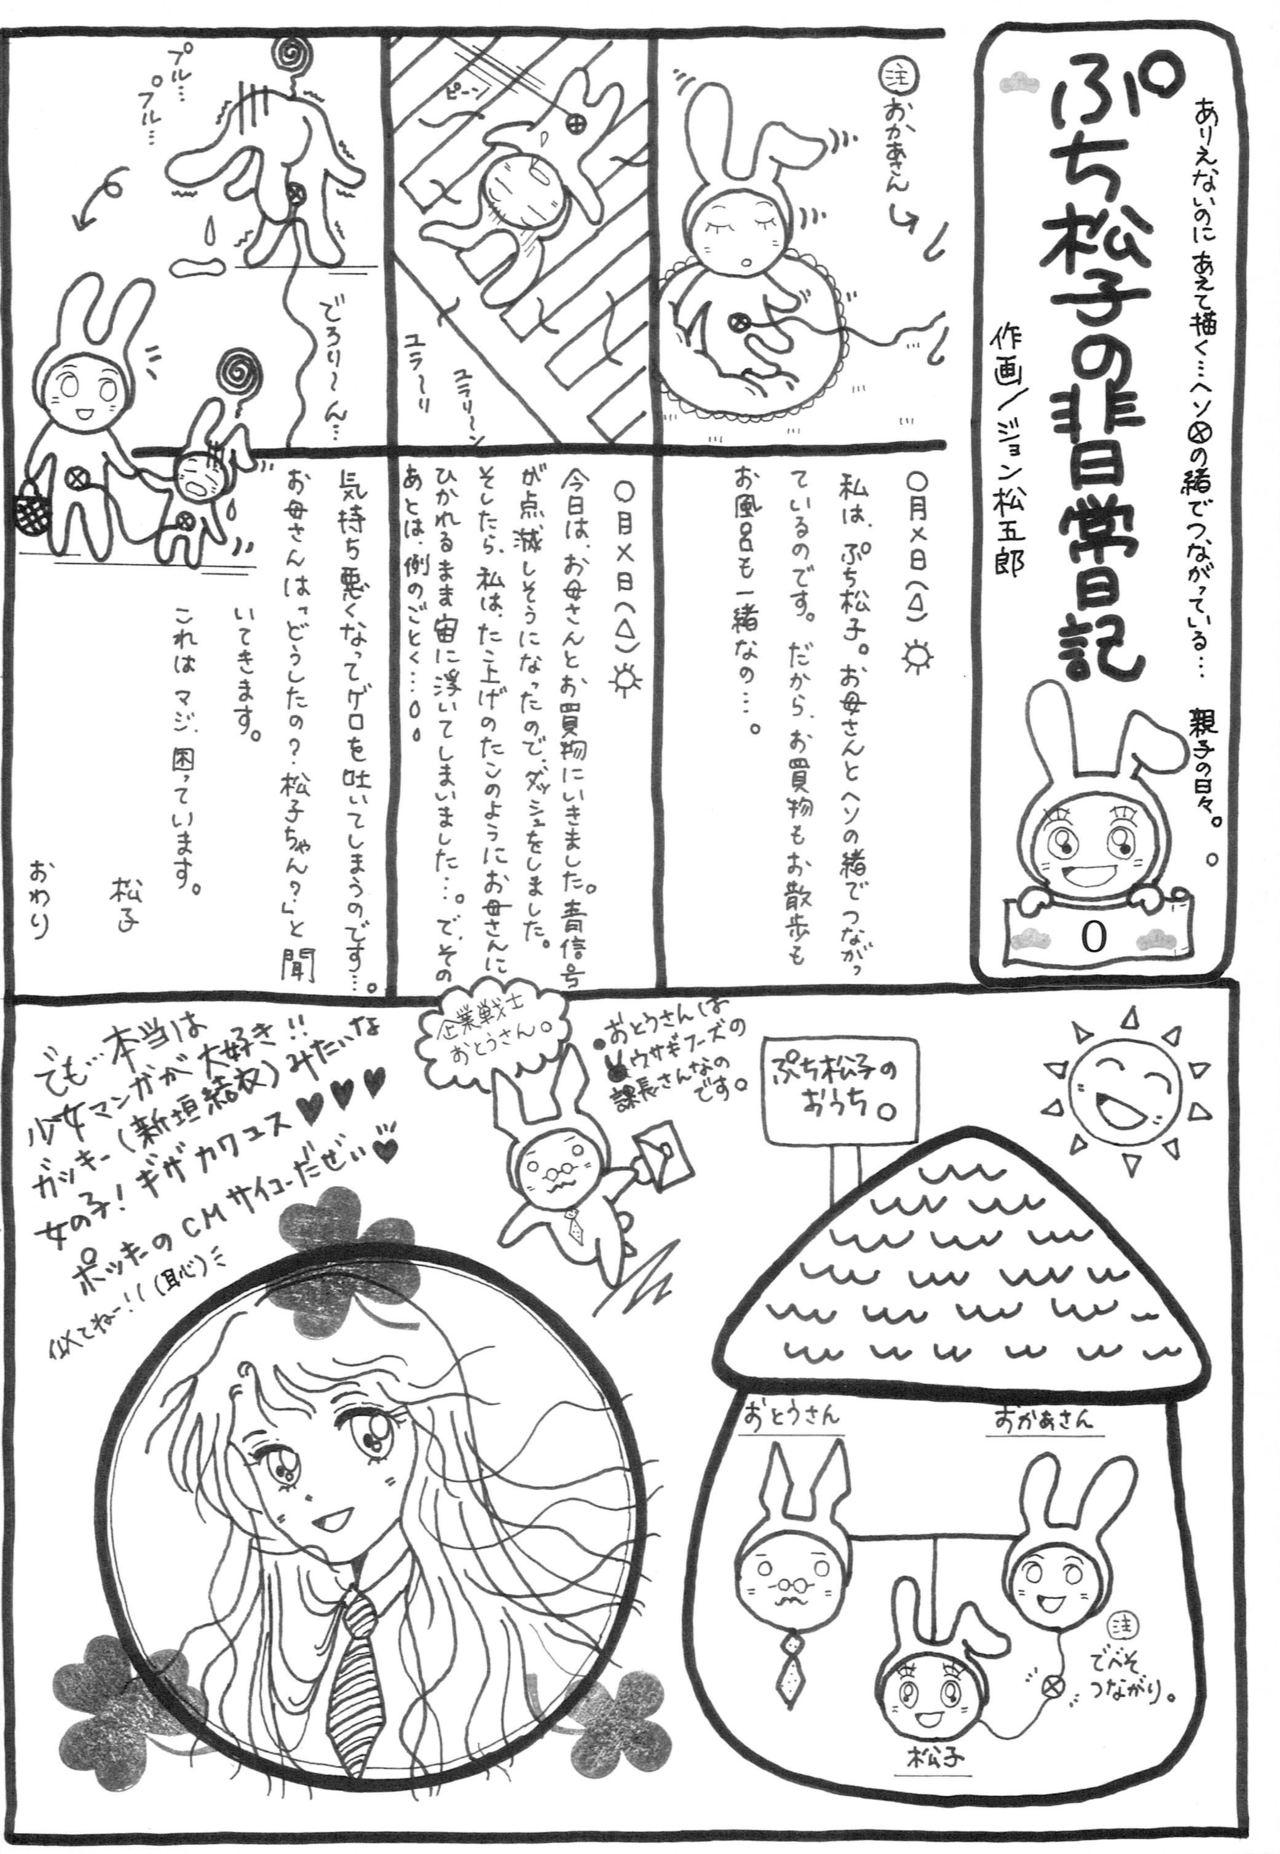 Emo Seinen Hana to Ribon 28 - Hayate no gotoku Euro Porn - Page 19